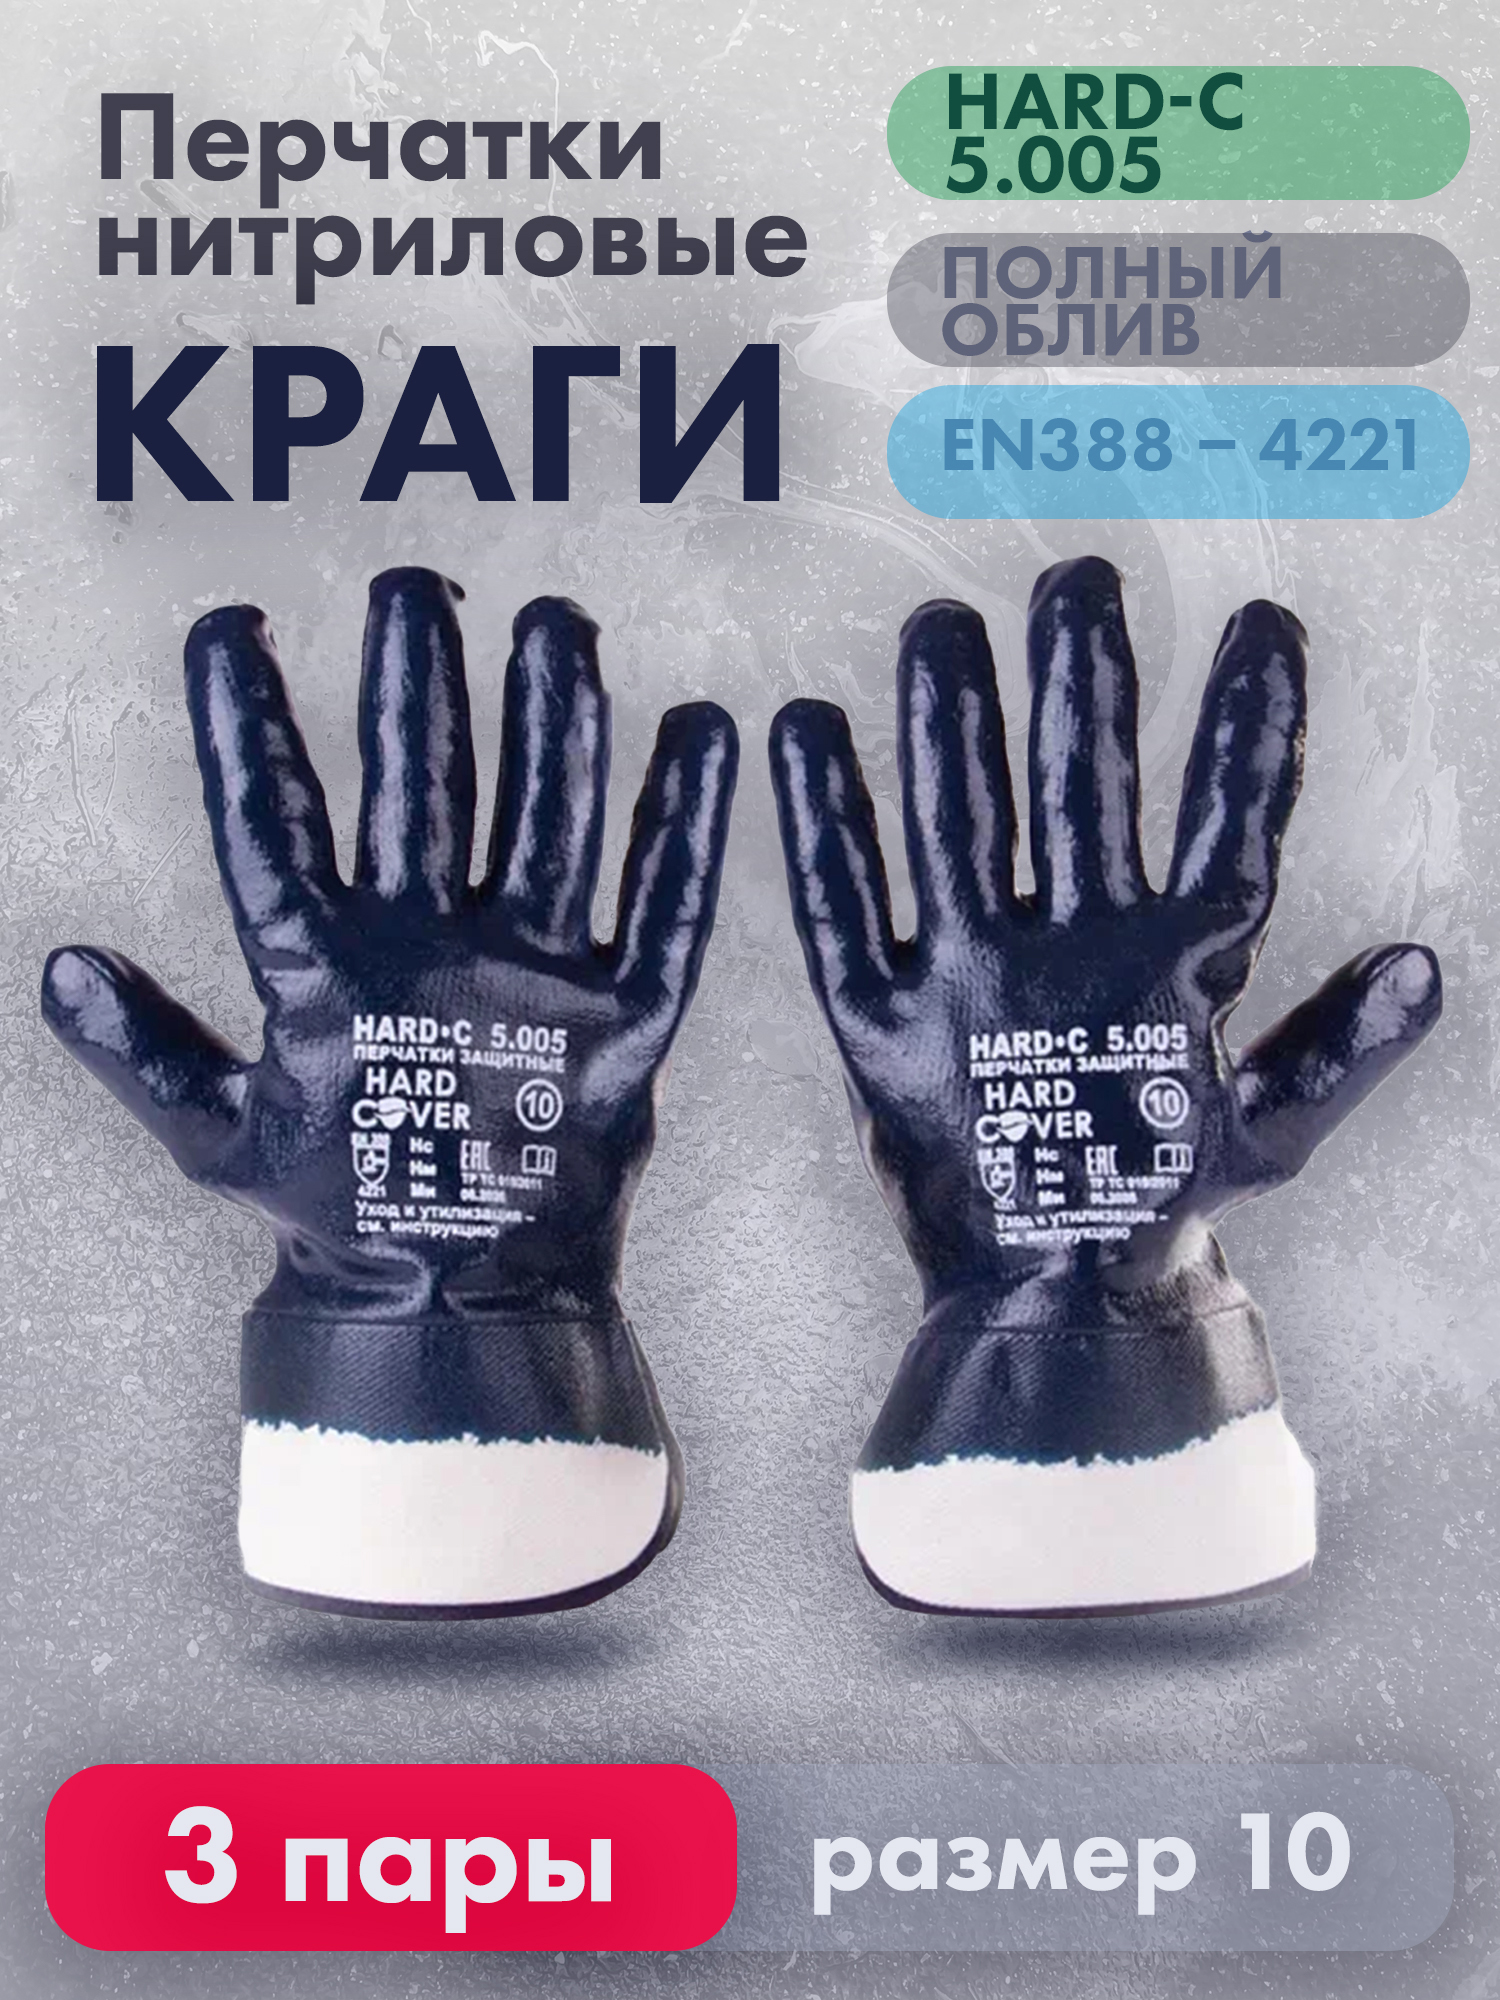 Перчатки рабочие HARD-С нитриловые, полный облив, размер 10, 3 пары manipula specialist перчатки ms нитрил кп ms 121 джерси нитрил полный крага си